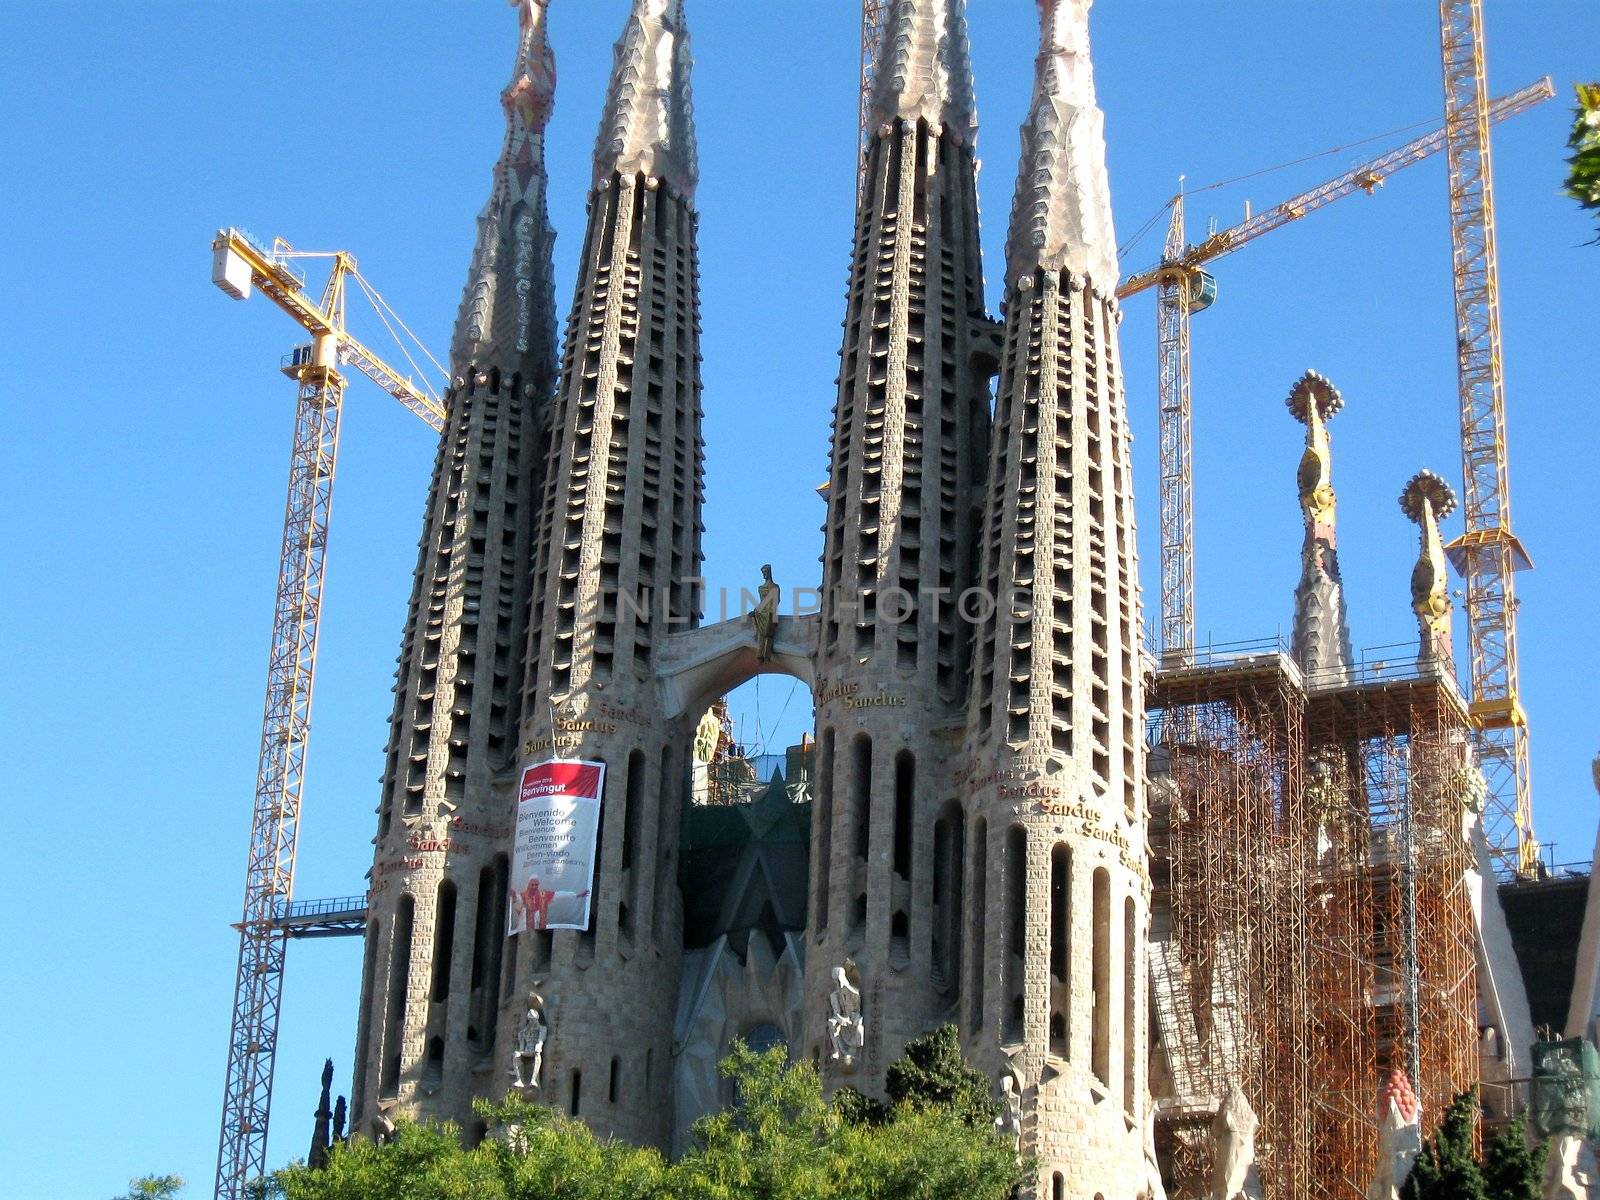 Sagrada Familia by dbriyul